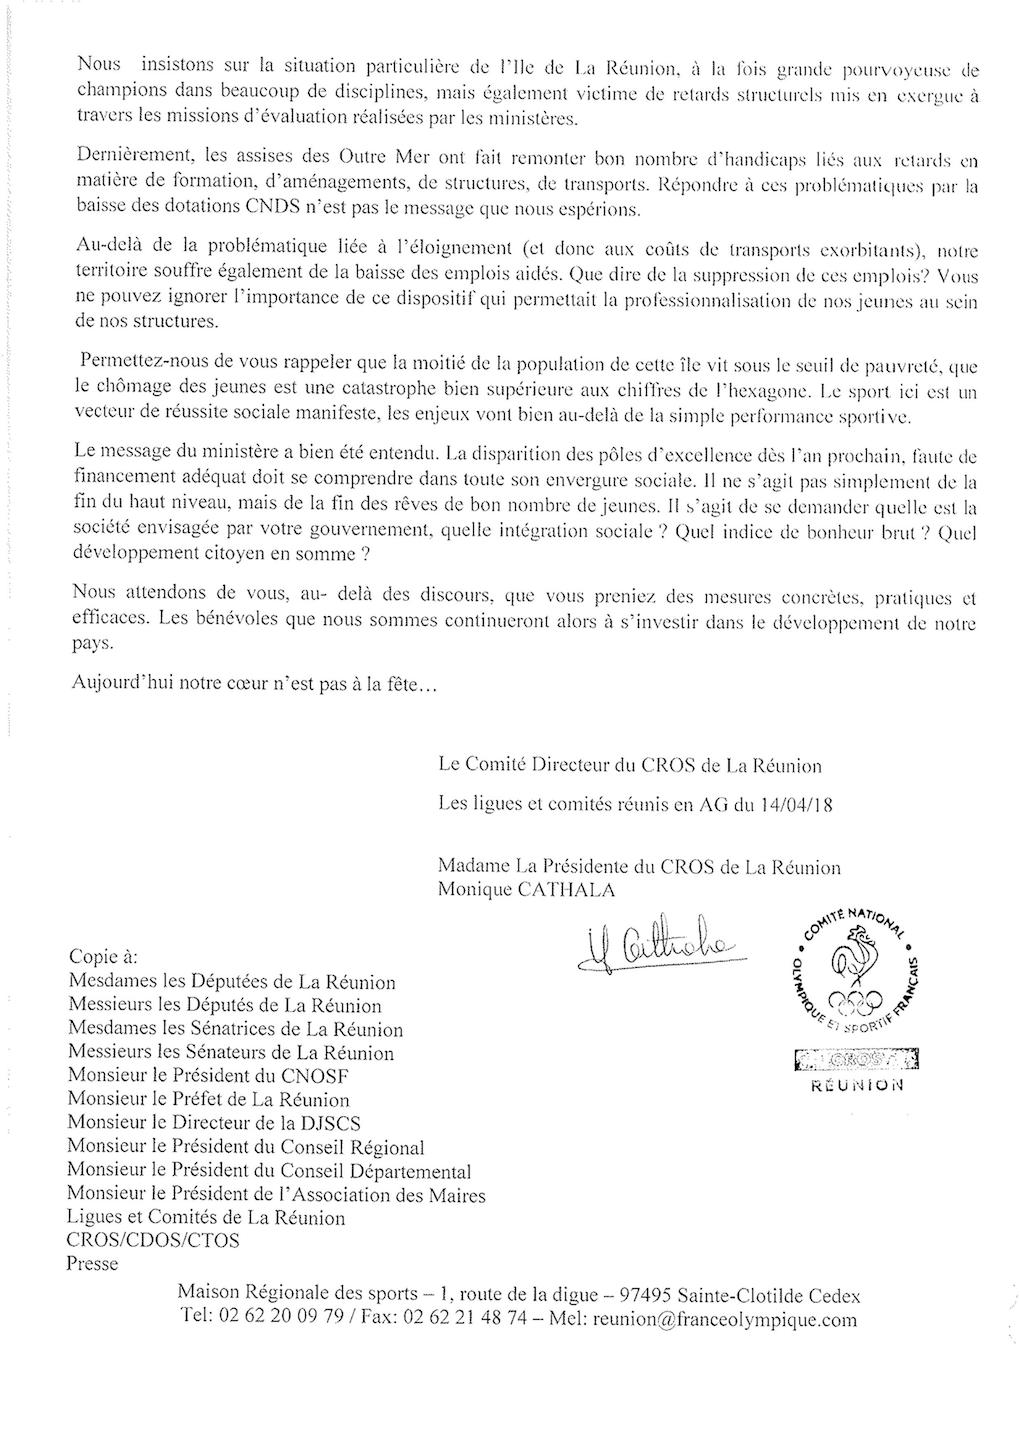 Le CROS Réunion interpelle le président de la République et ses ministres